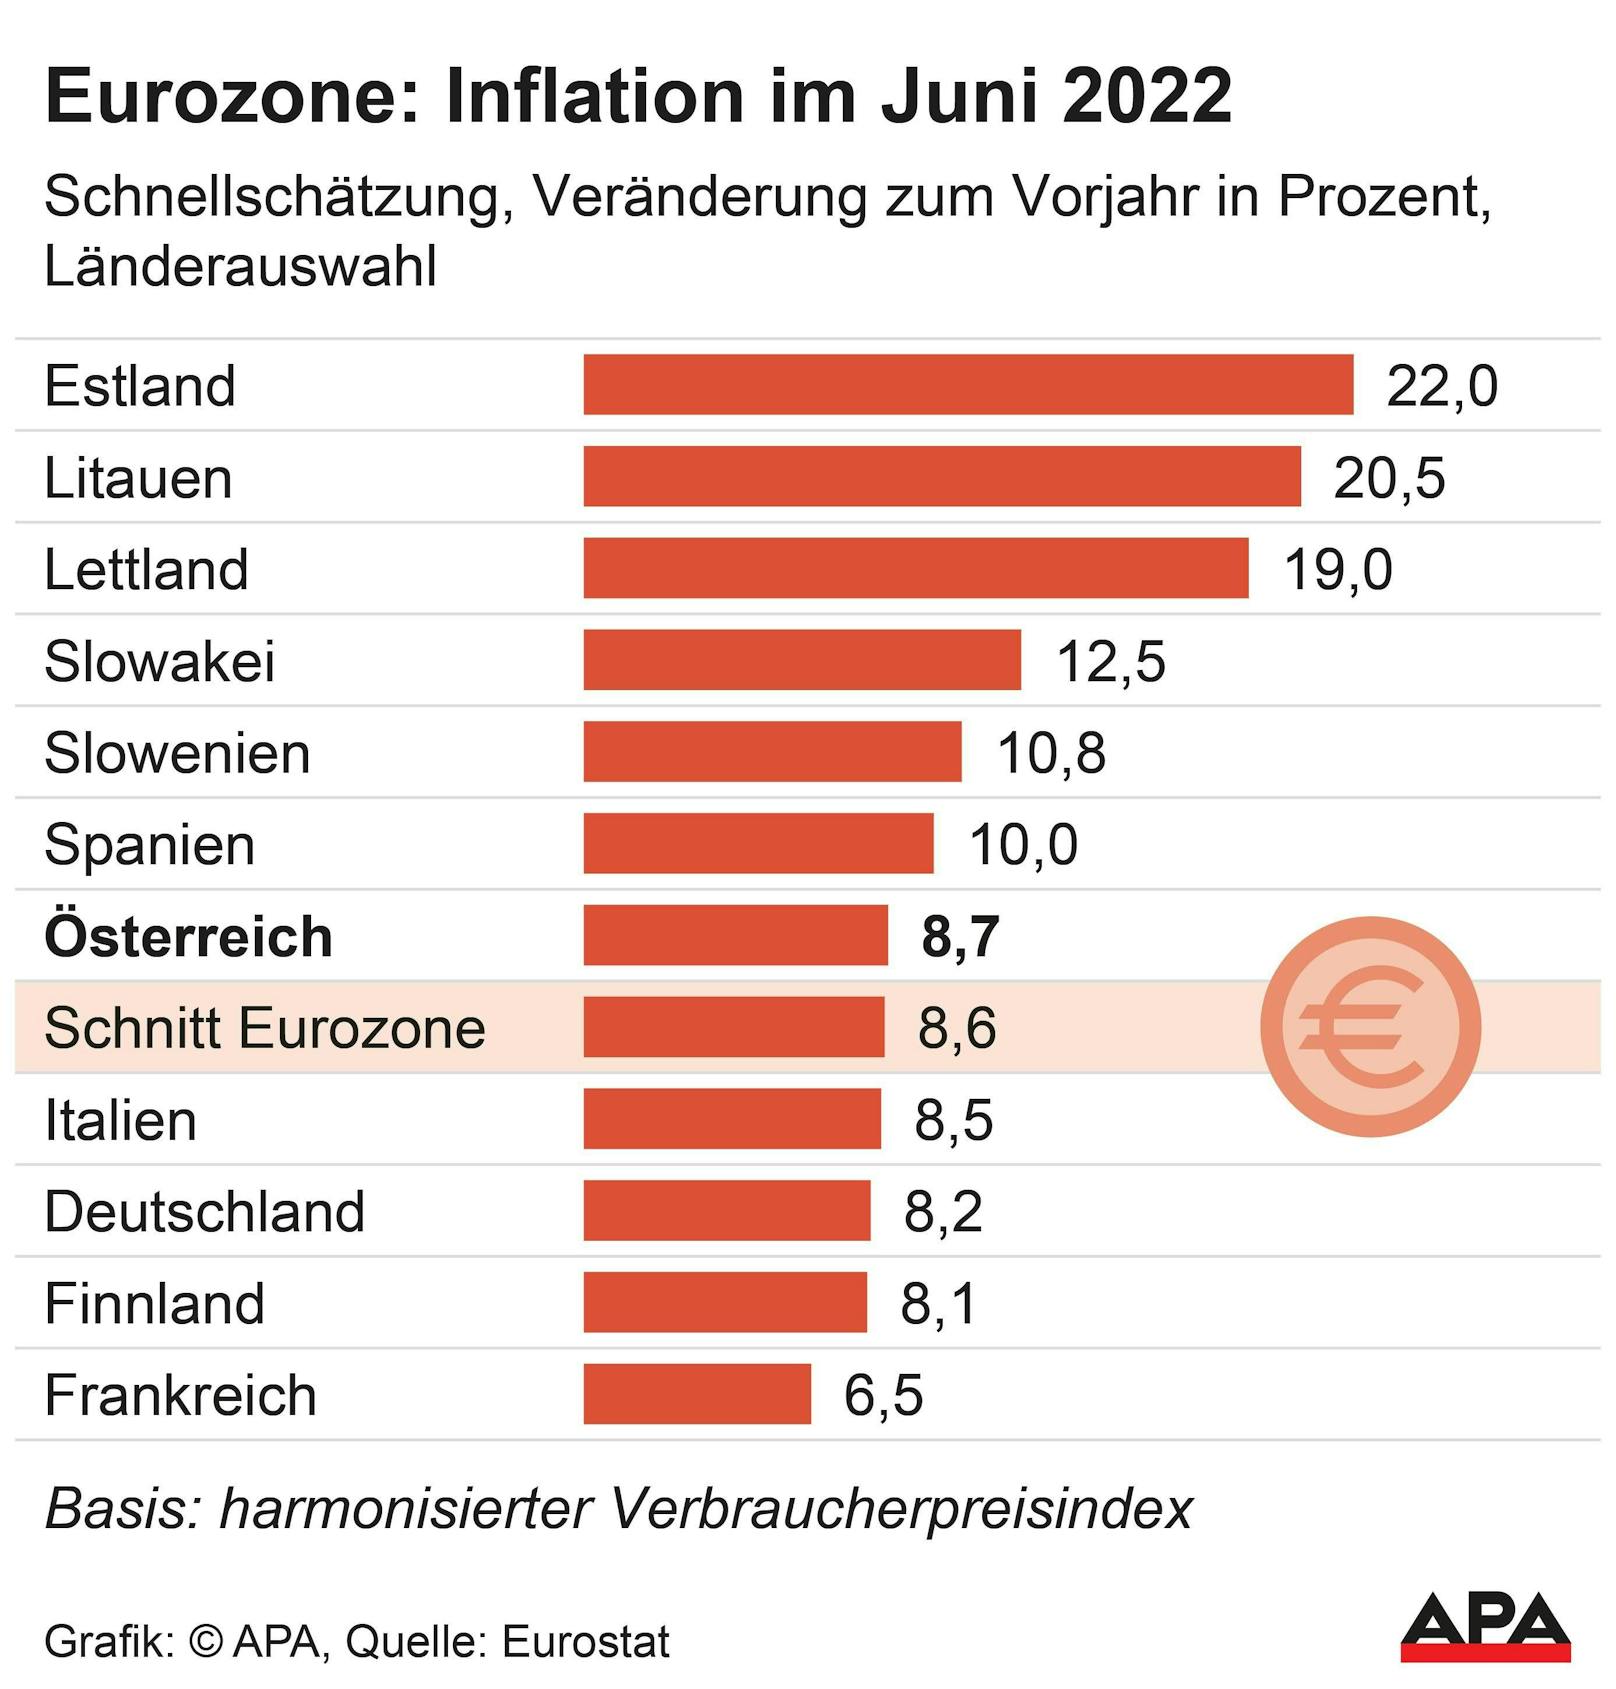 Inflation in der EU: Schnellschätzung auf Basis des harmonisierten Verbraucherpreisindex.